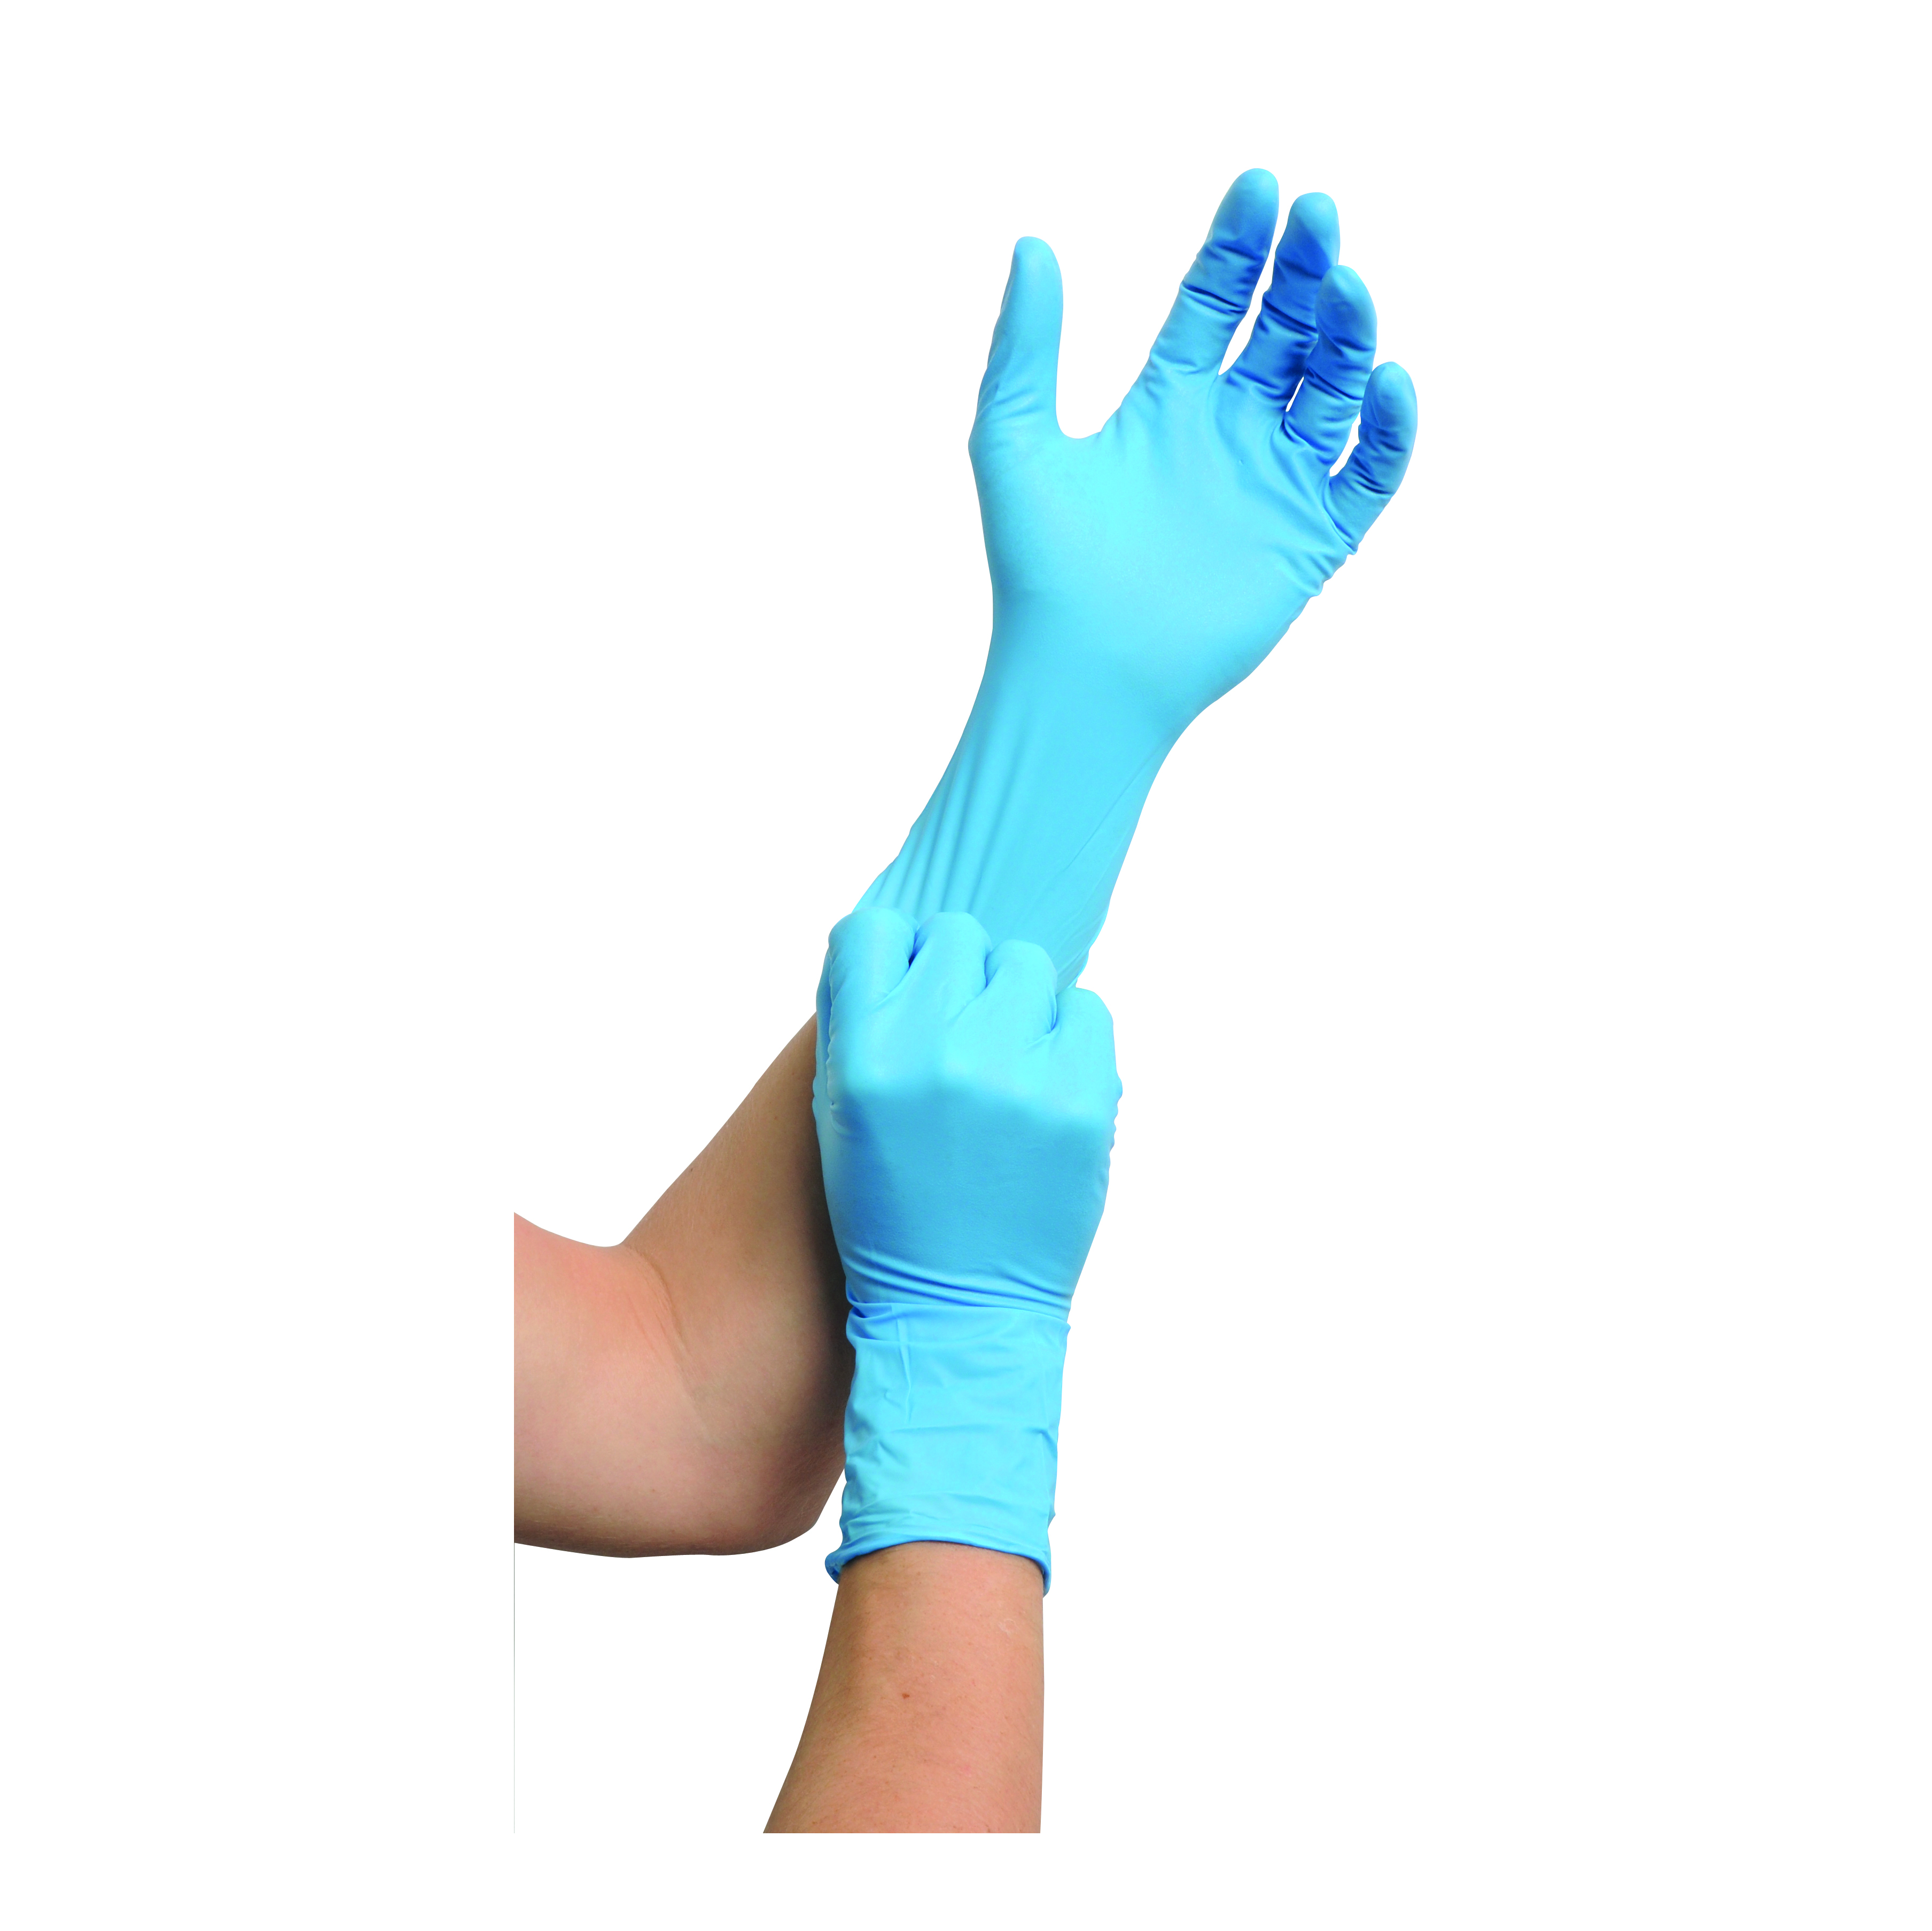 MaiMed nitril ST PF Einmalchemikalienschutzhandschuhe, Gr. M, blau, ungepudert